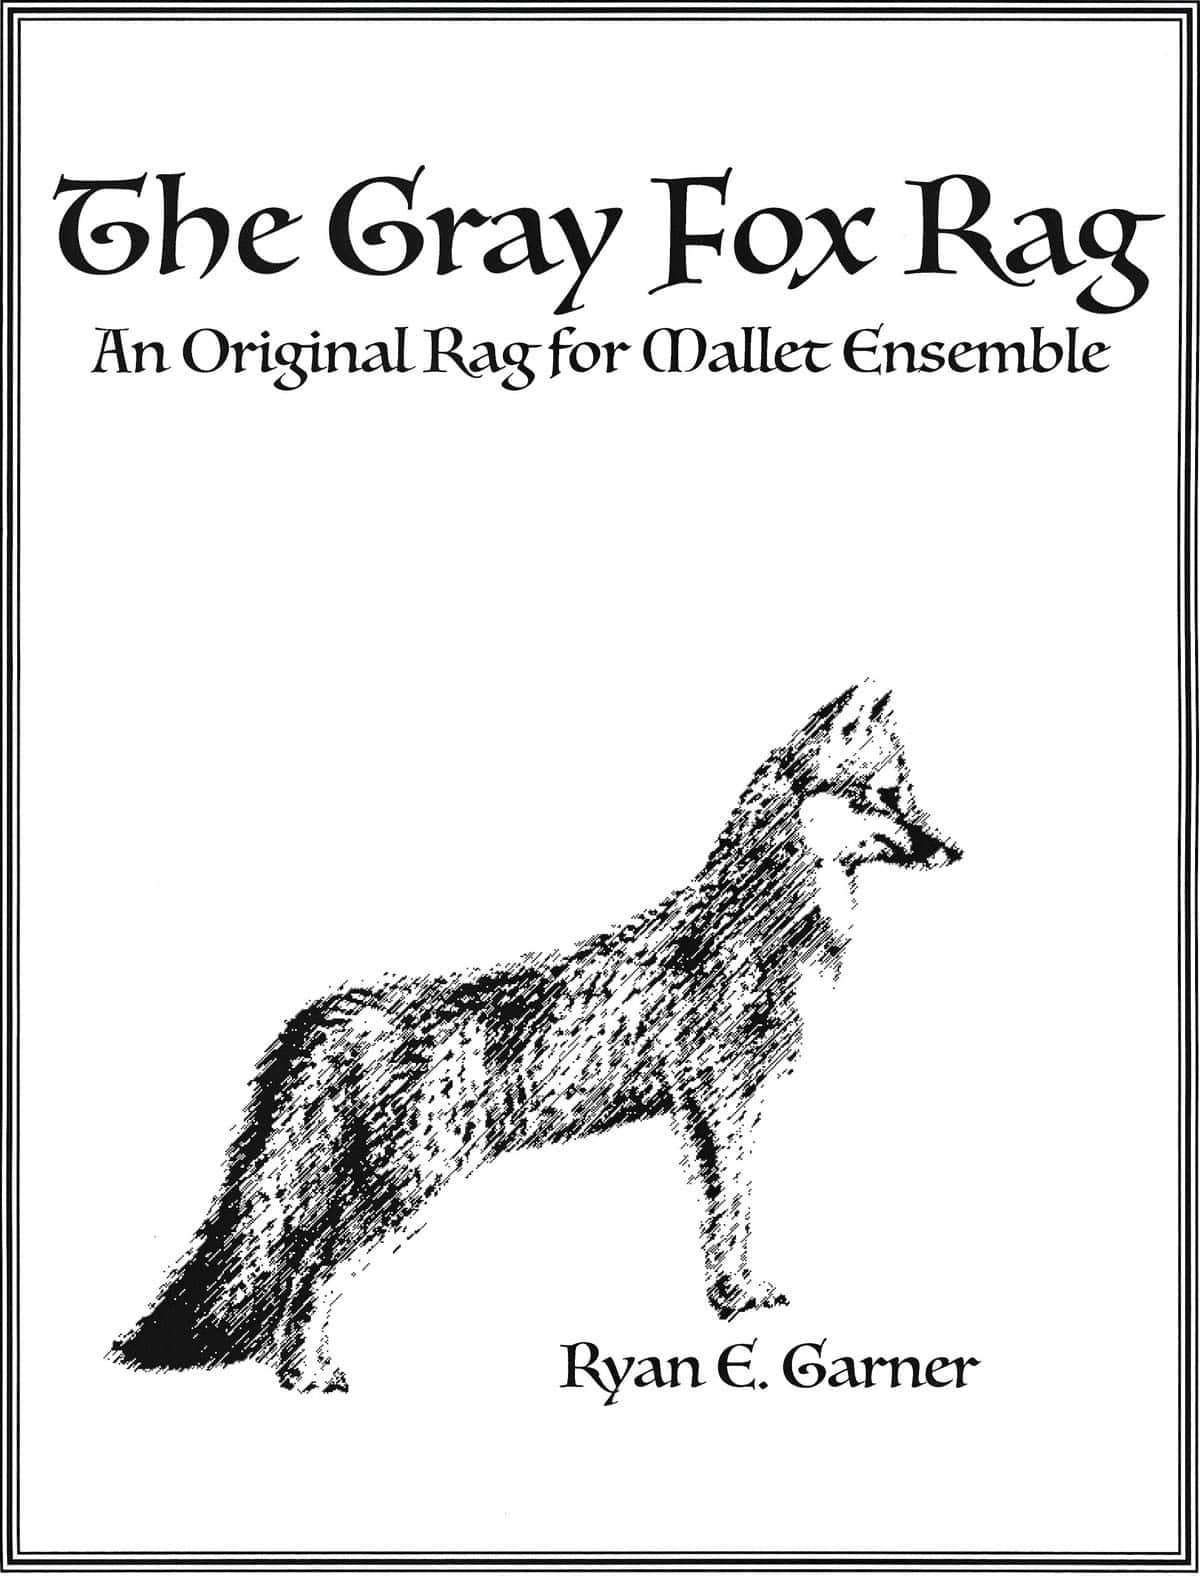 The Gray Fox Rag by Ryan Garner